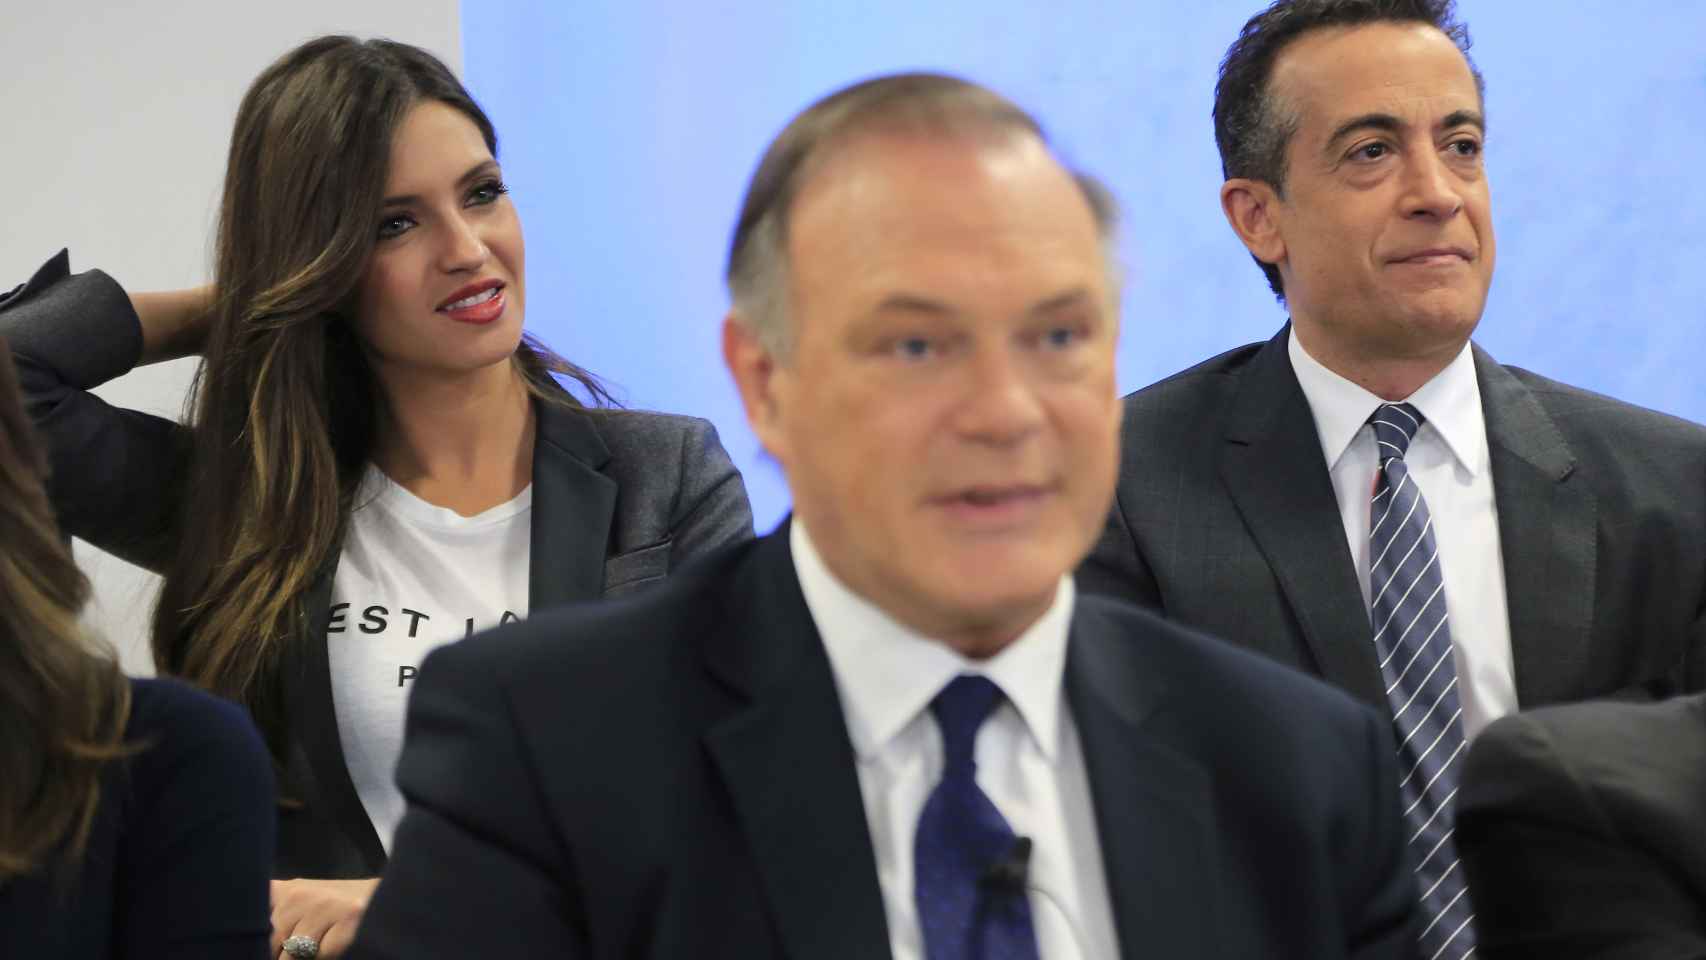 J. J. Santos, a la derecha de la imagen, junto a Sara Carbonero y Pedro Piqueras, compañeros de Informativos Telecinco en 2015.